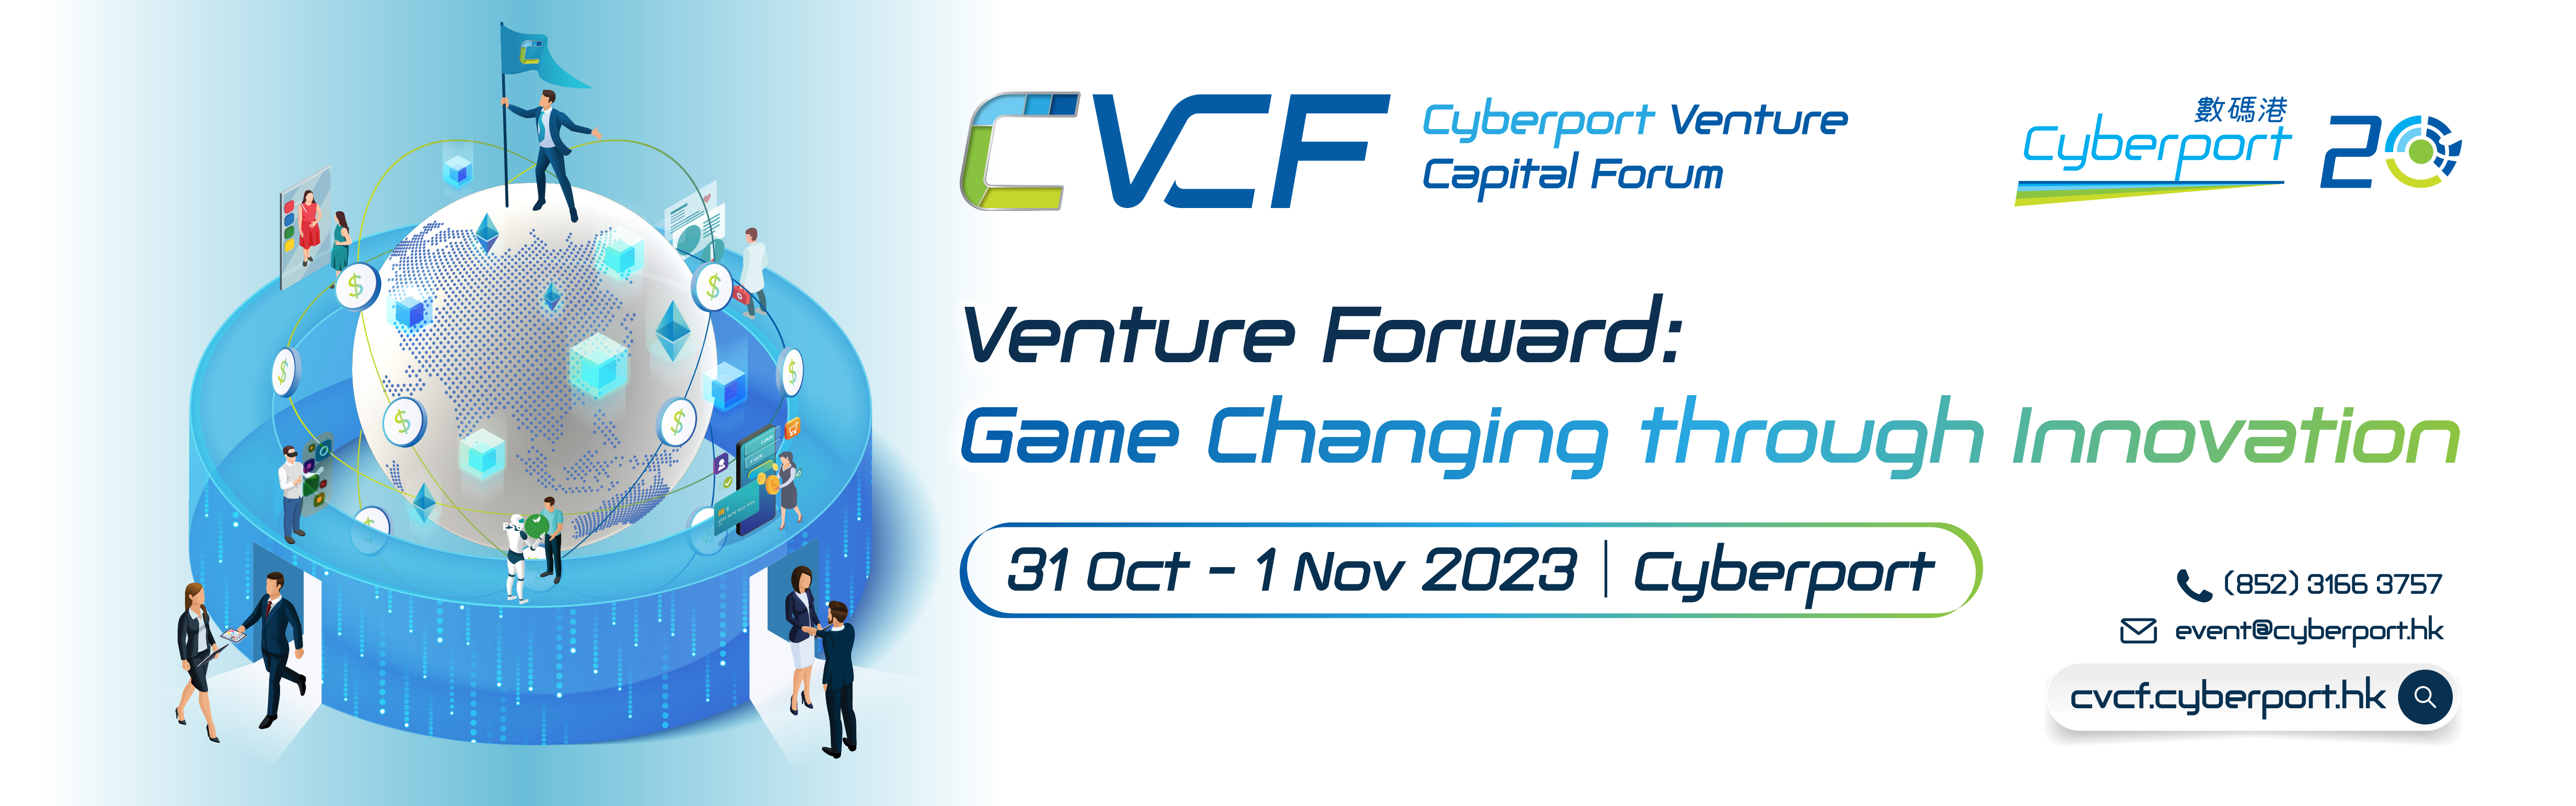 Cyberport Venture Capital Forum 2023